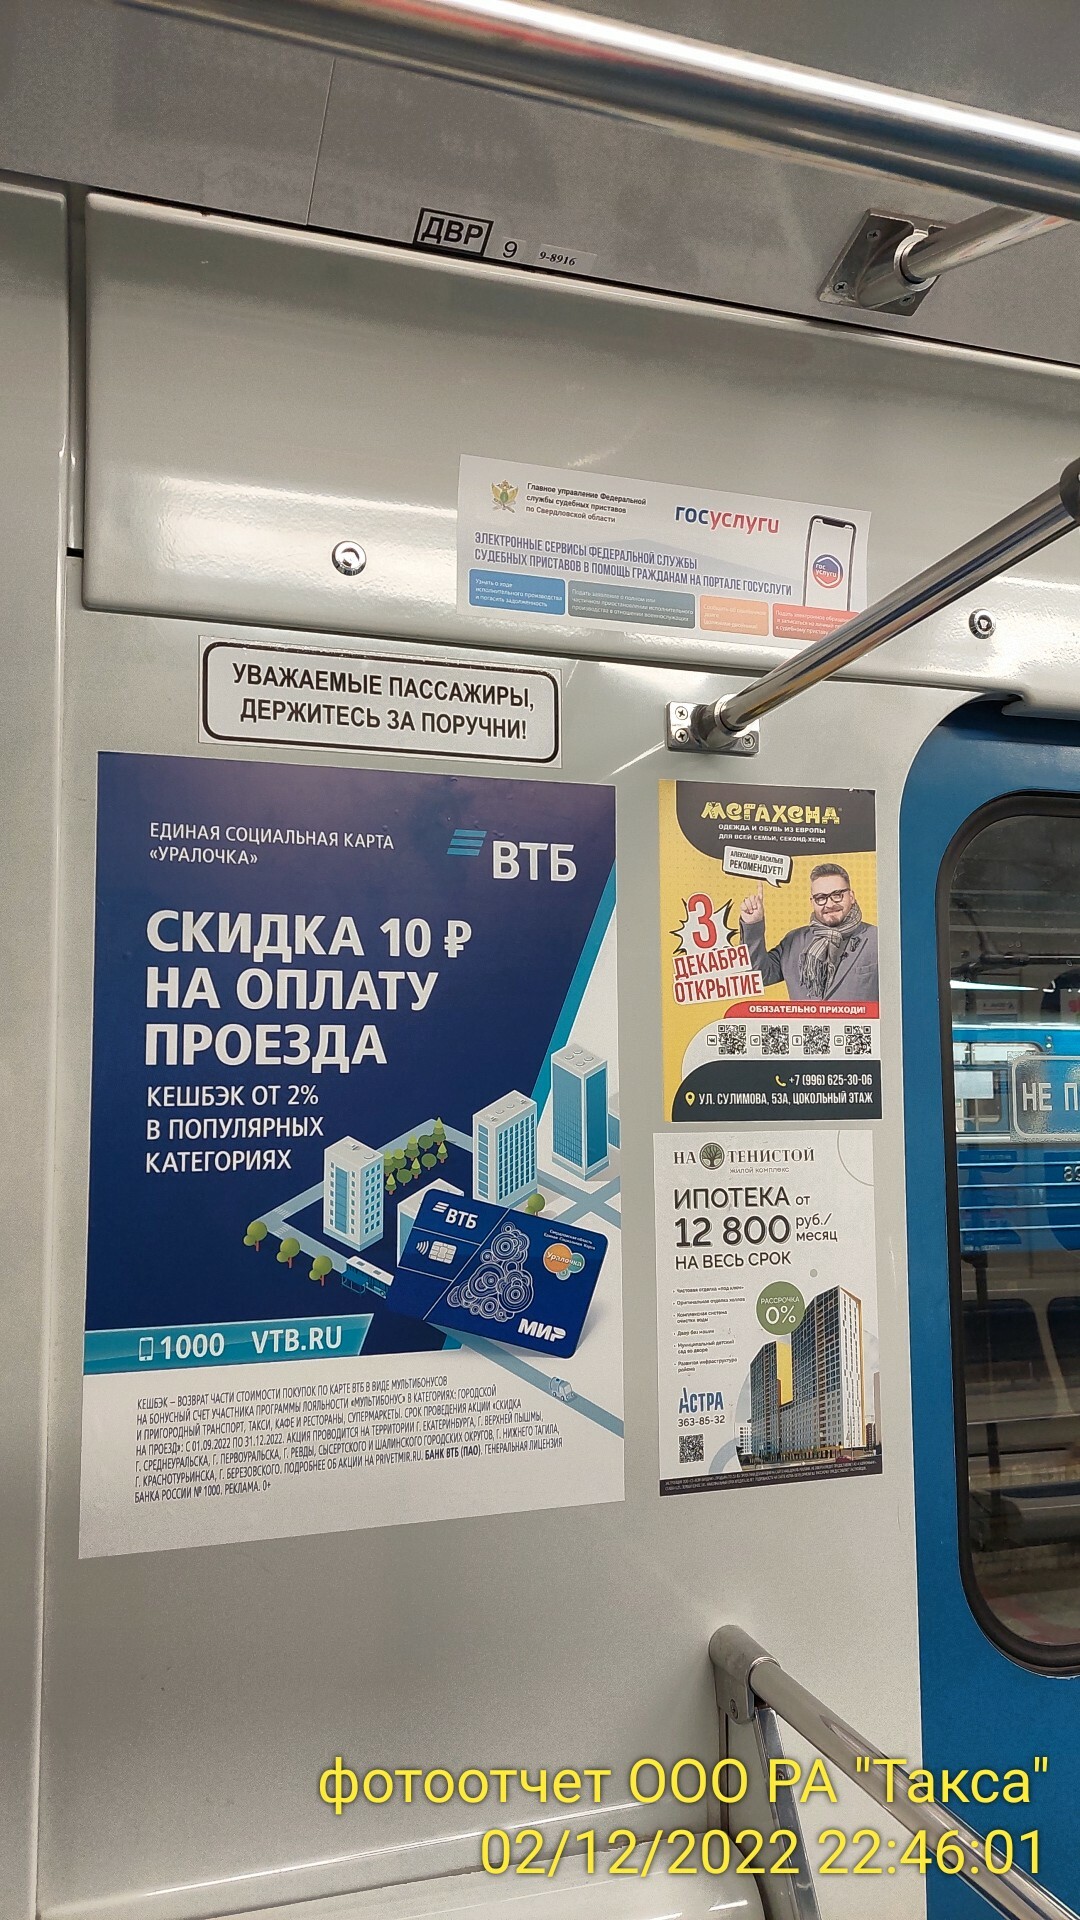 Размещение и стоимость рекламы в метро Екатеринбурга